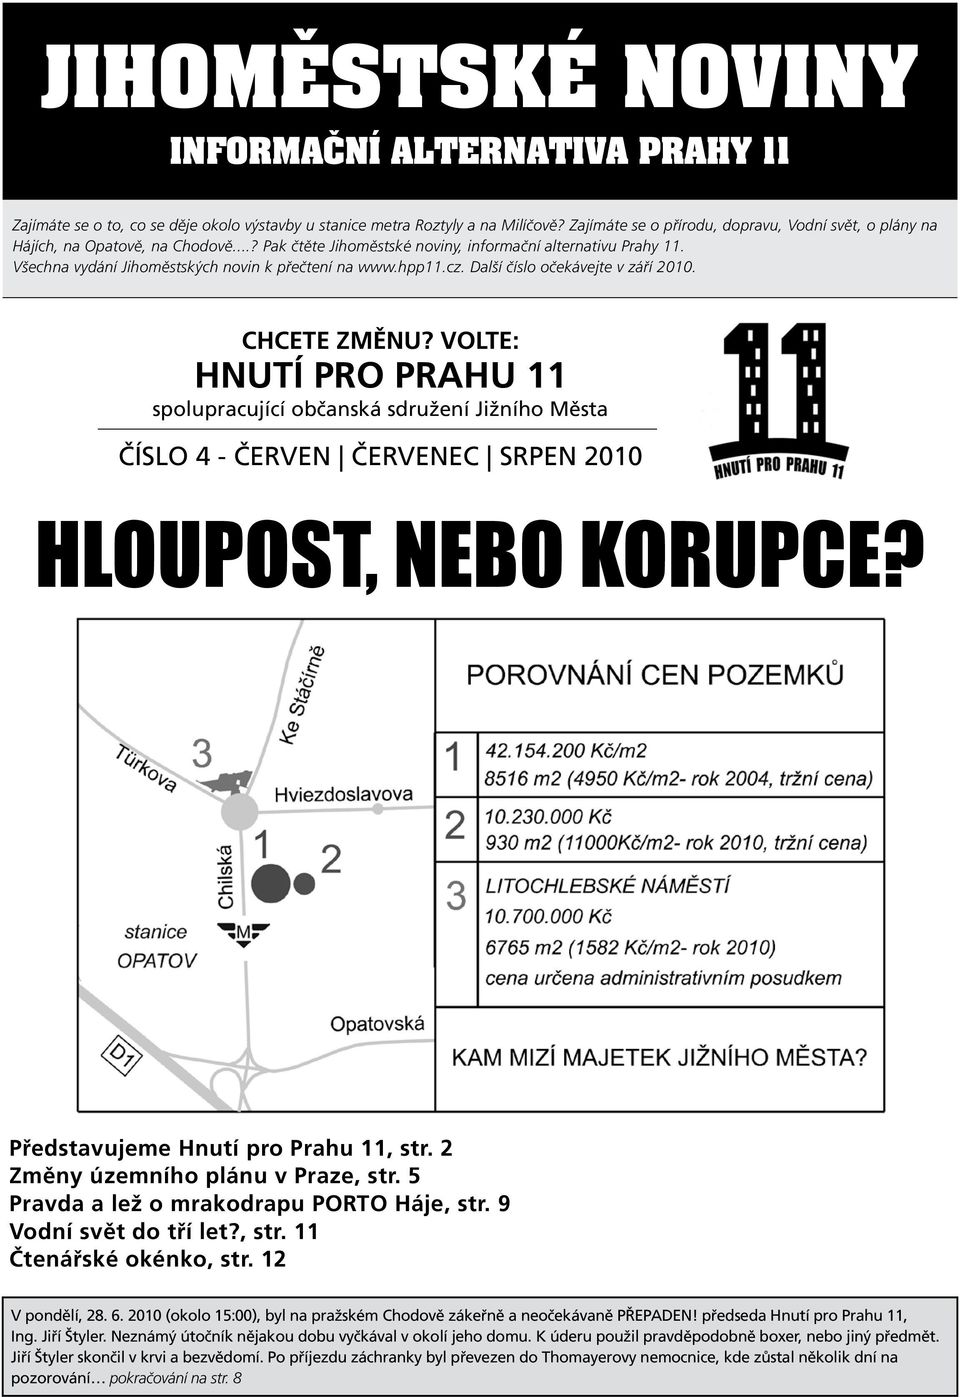 Všechna vydání Jihoměstských novin k přečtení na www.hpp11.cz. Další číslo očekávejte v září 2010. chcete změnu?